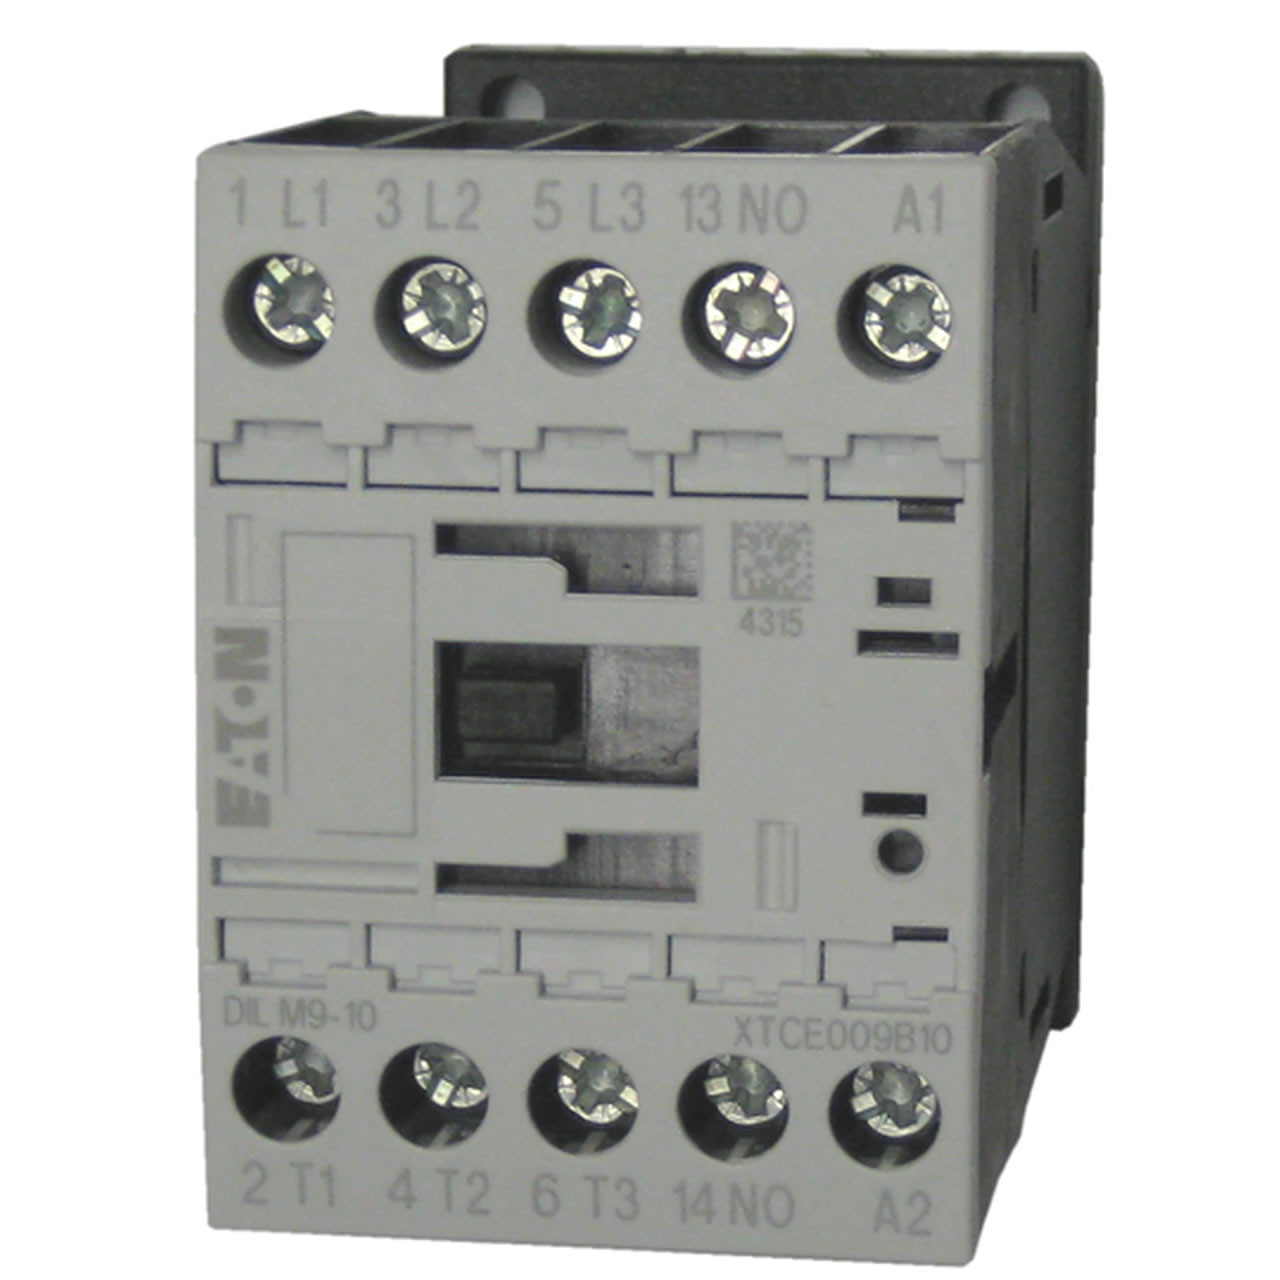 Eaton/Moeller DILM9-10 480 volt contactor